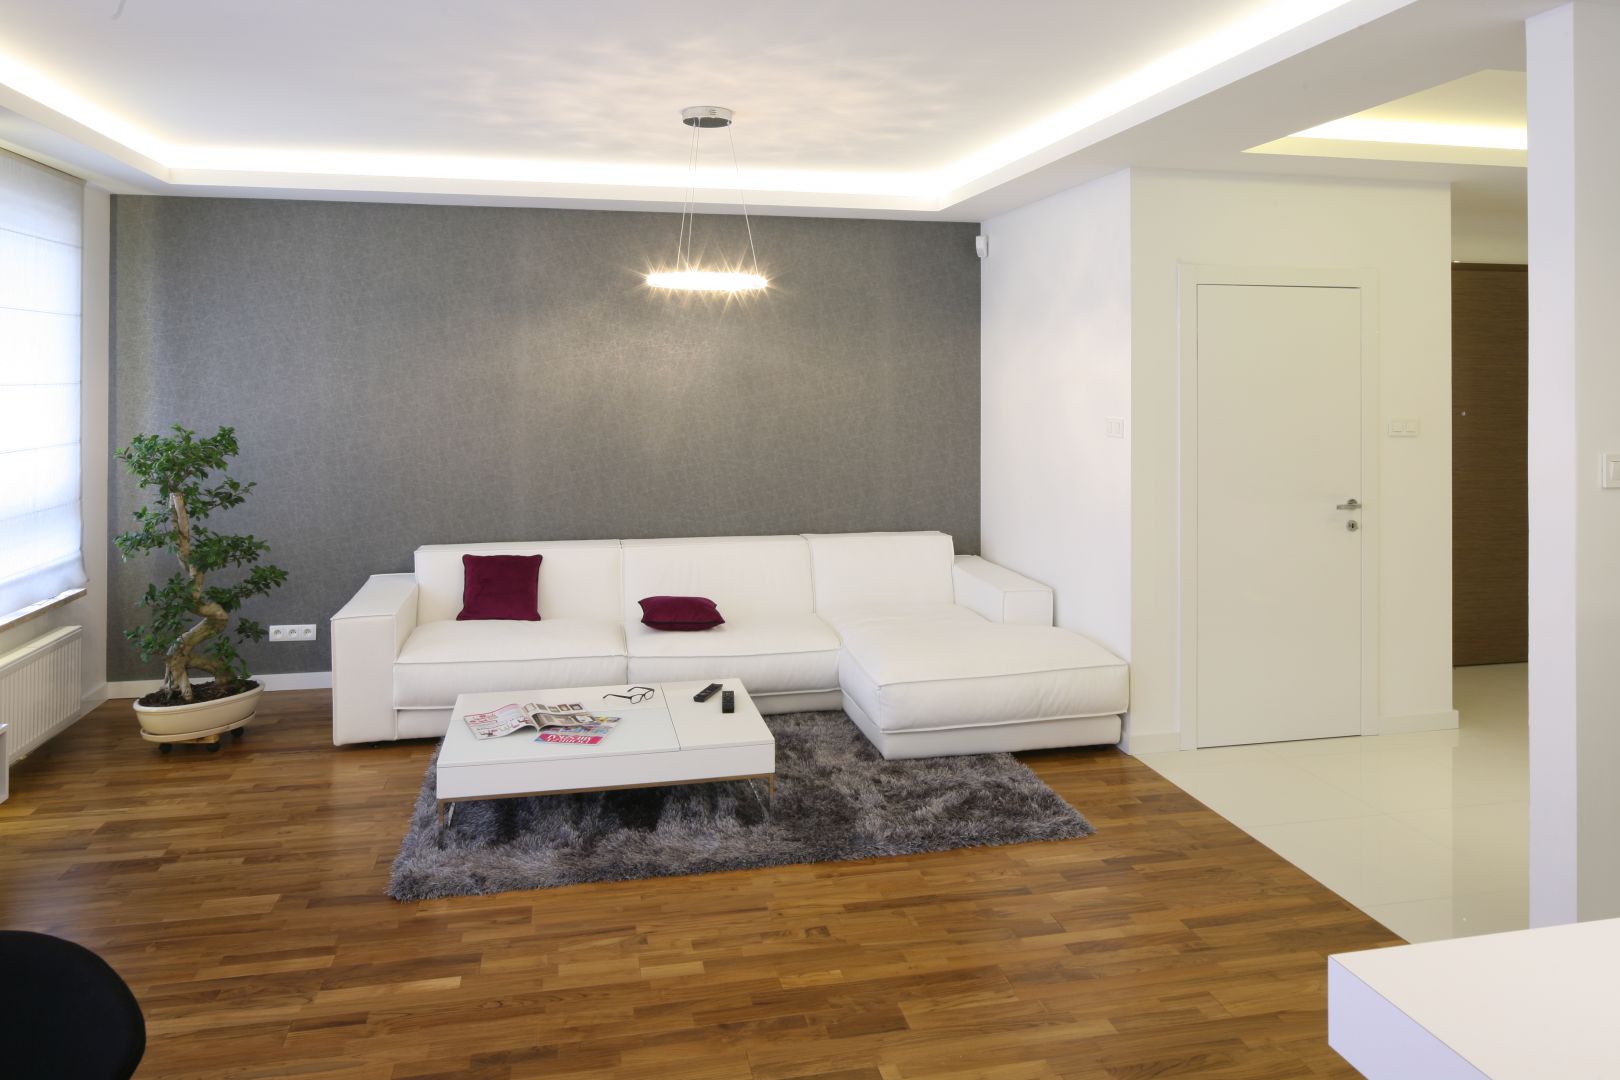 Mieszkanie w stylu minimalistycznym jest czyste, niezagracone i przestronne. Projekt: Agnieszka Hajdas-Obajtek. Fot. Bartosz Jarosz 